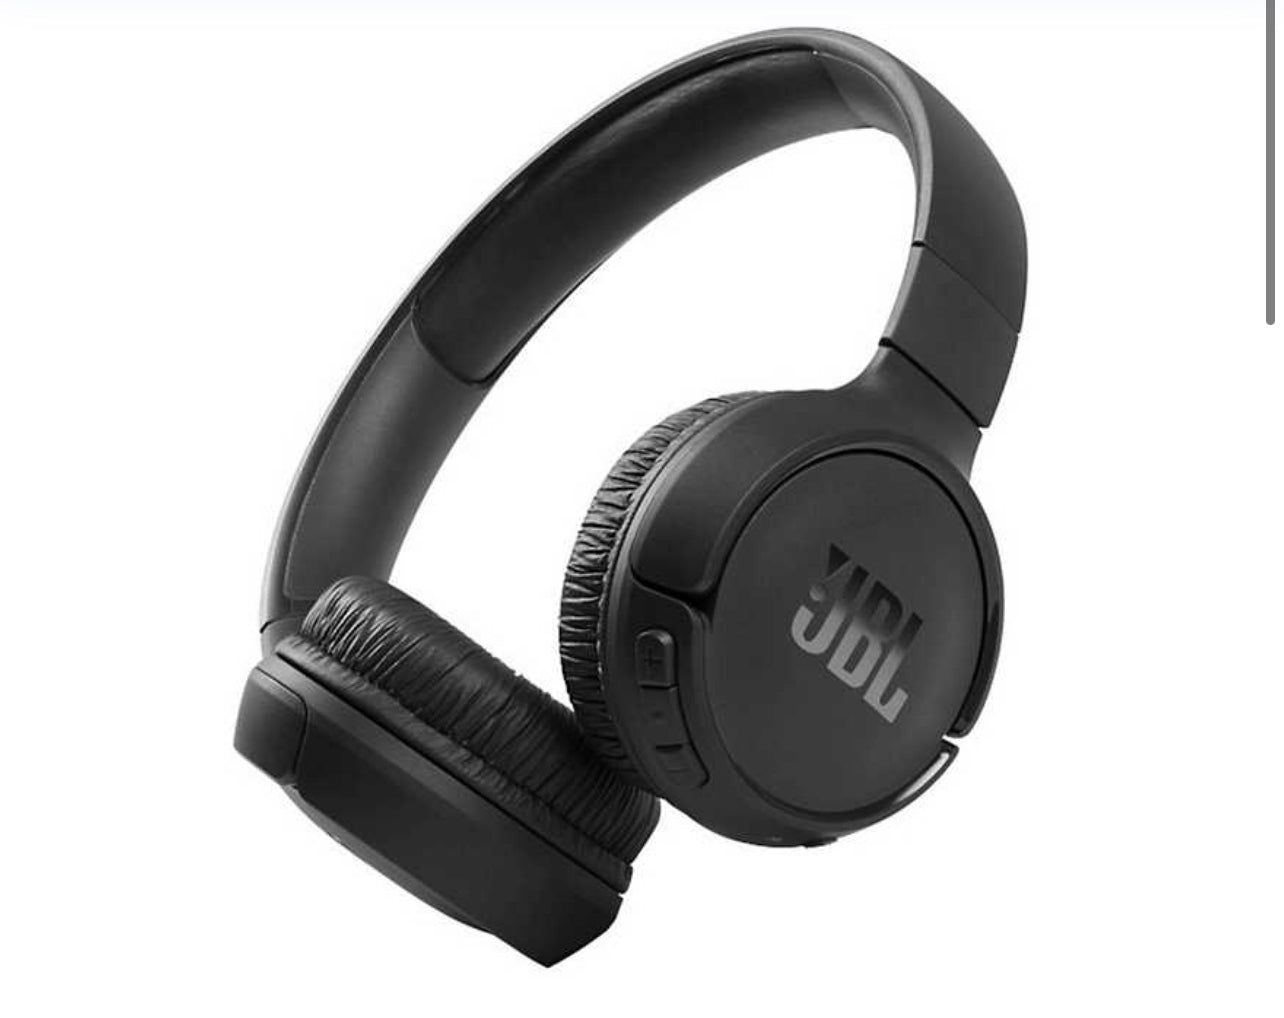 JBL Tune 510 Bluetooth On-Ear Headphones